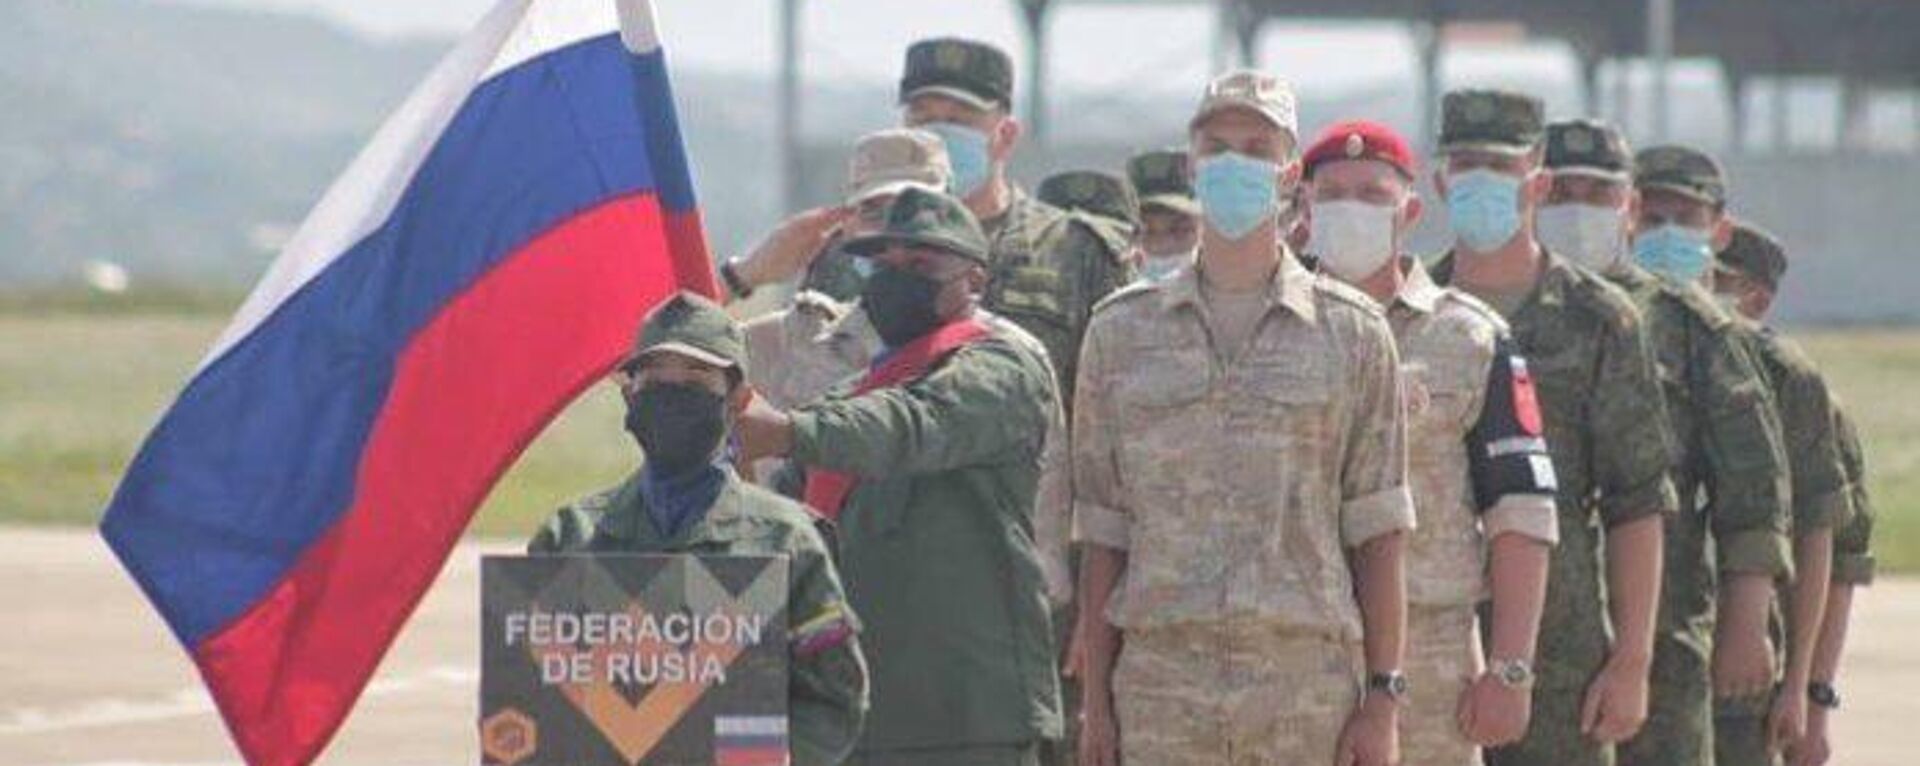 La delegación de Rusia llegó a Venezuela para participar en los Juegos Militares Internacionales Army Games 2022 - Sputnik Mundo, 1920, 08.08.2022